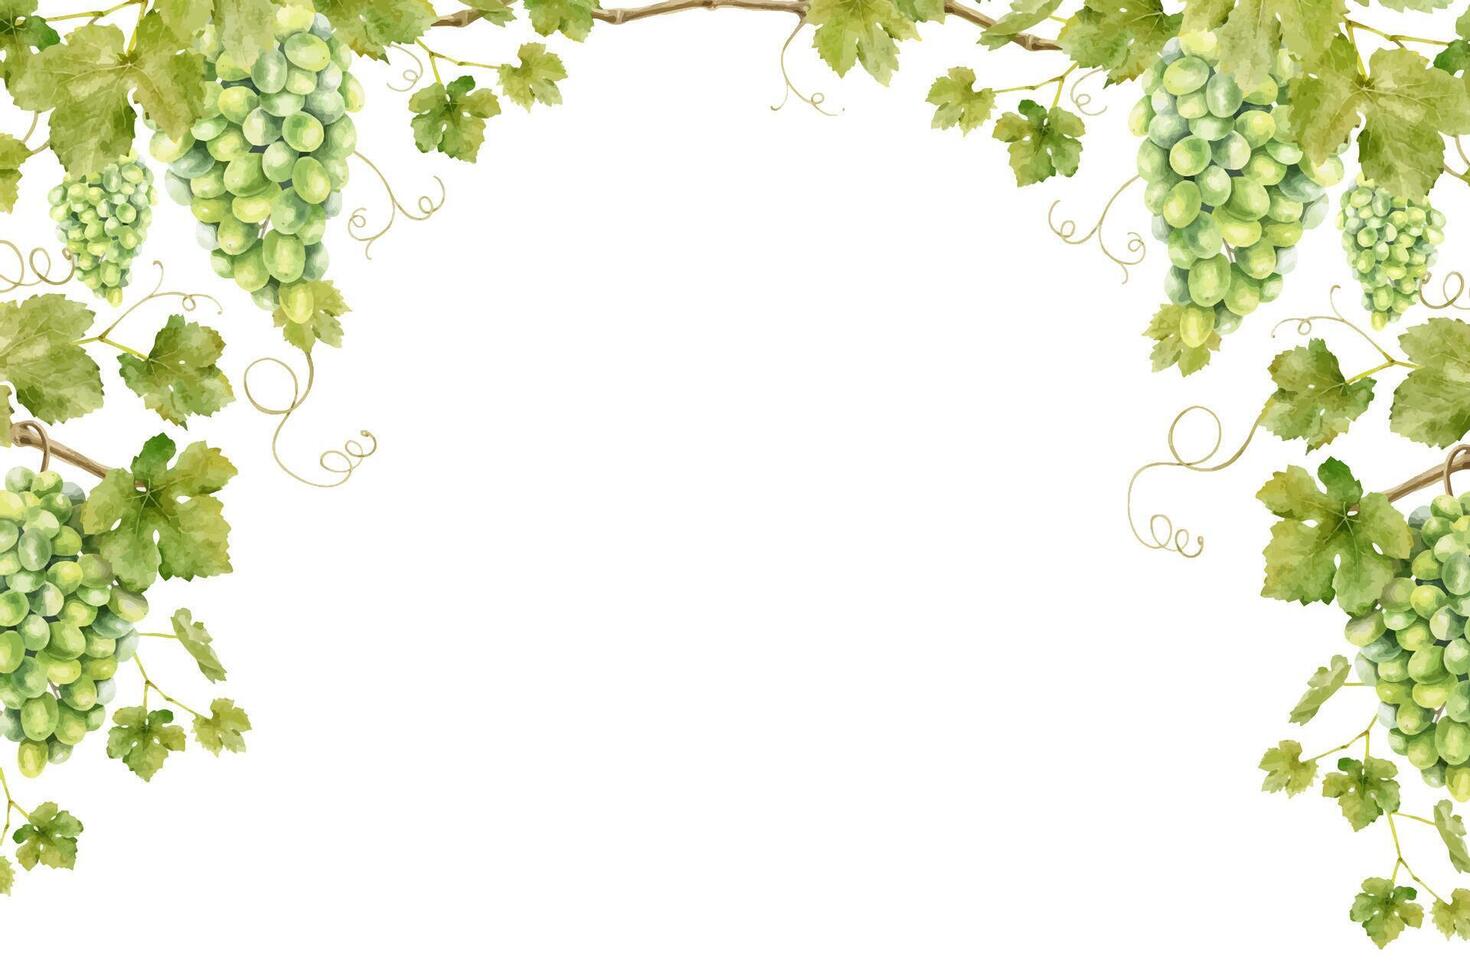 kader van bundel groen druiven met bladeren. sjabloon van Liaan. geïsoleerd waterverf illustraties voor de ontwerp van etiketten van wijn, druif sap en cosmetica, bruiloft kaarten, briefpapier, groeten kaarten vector